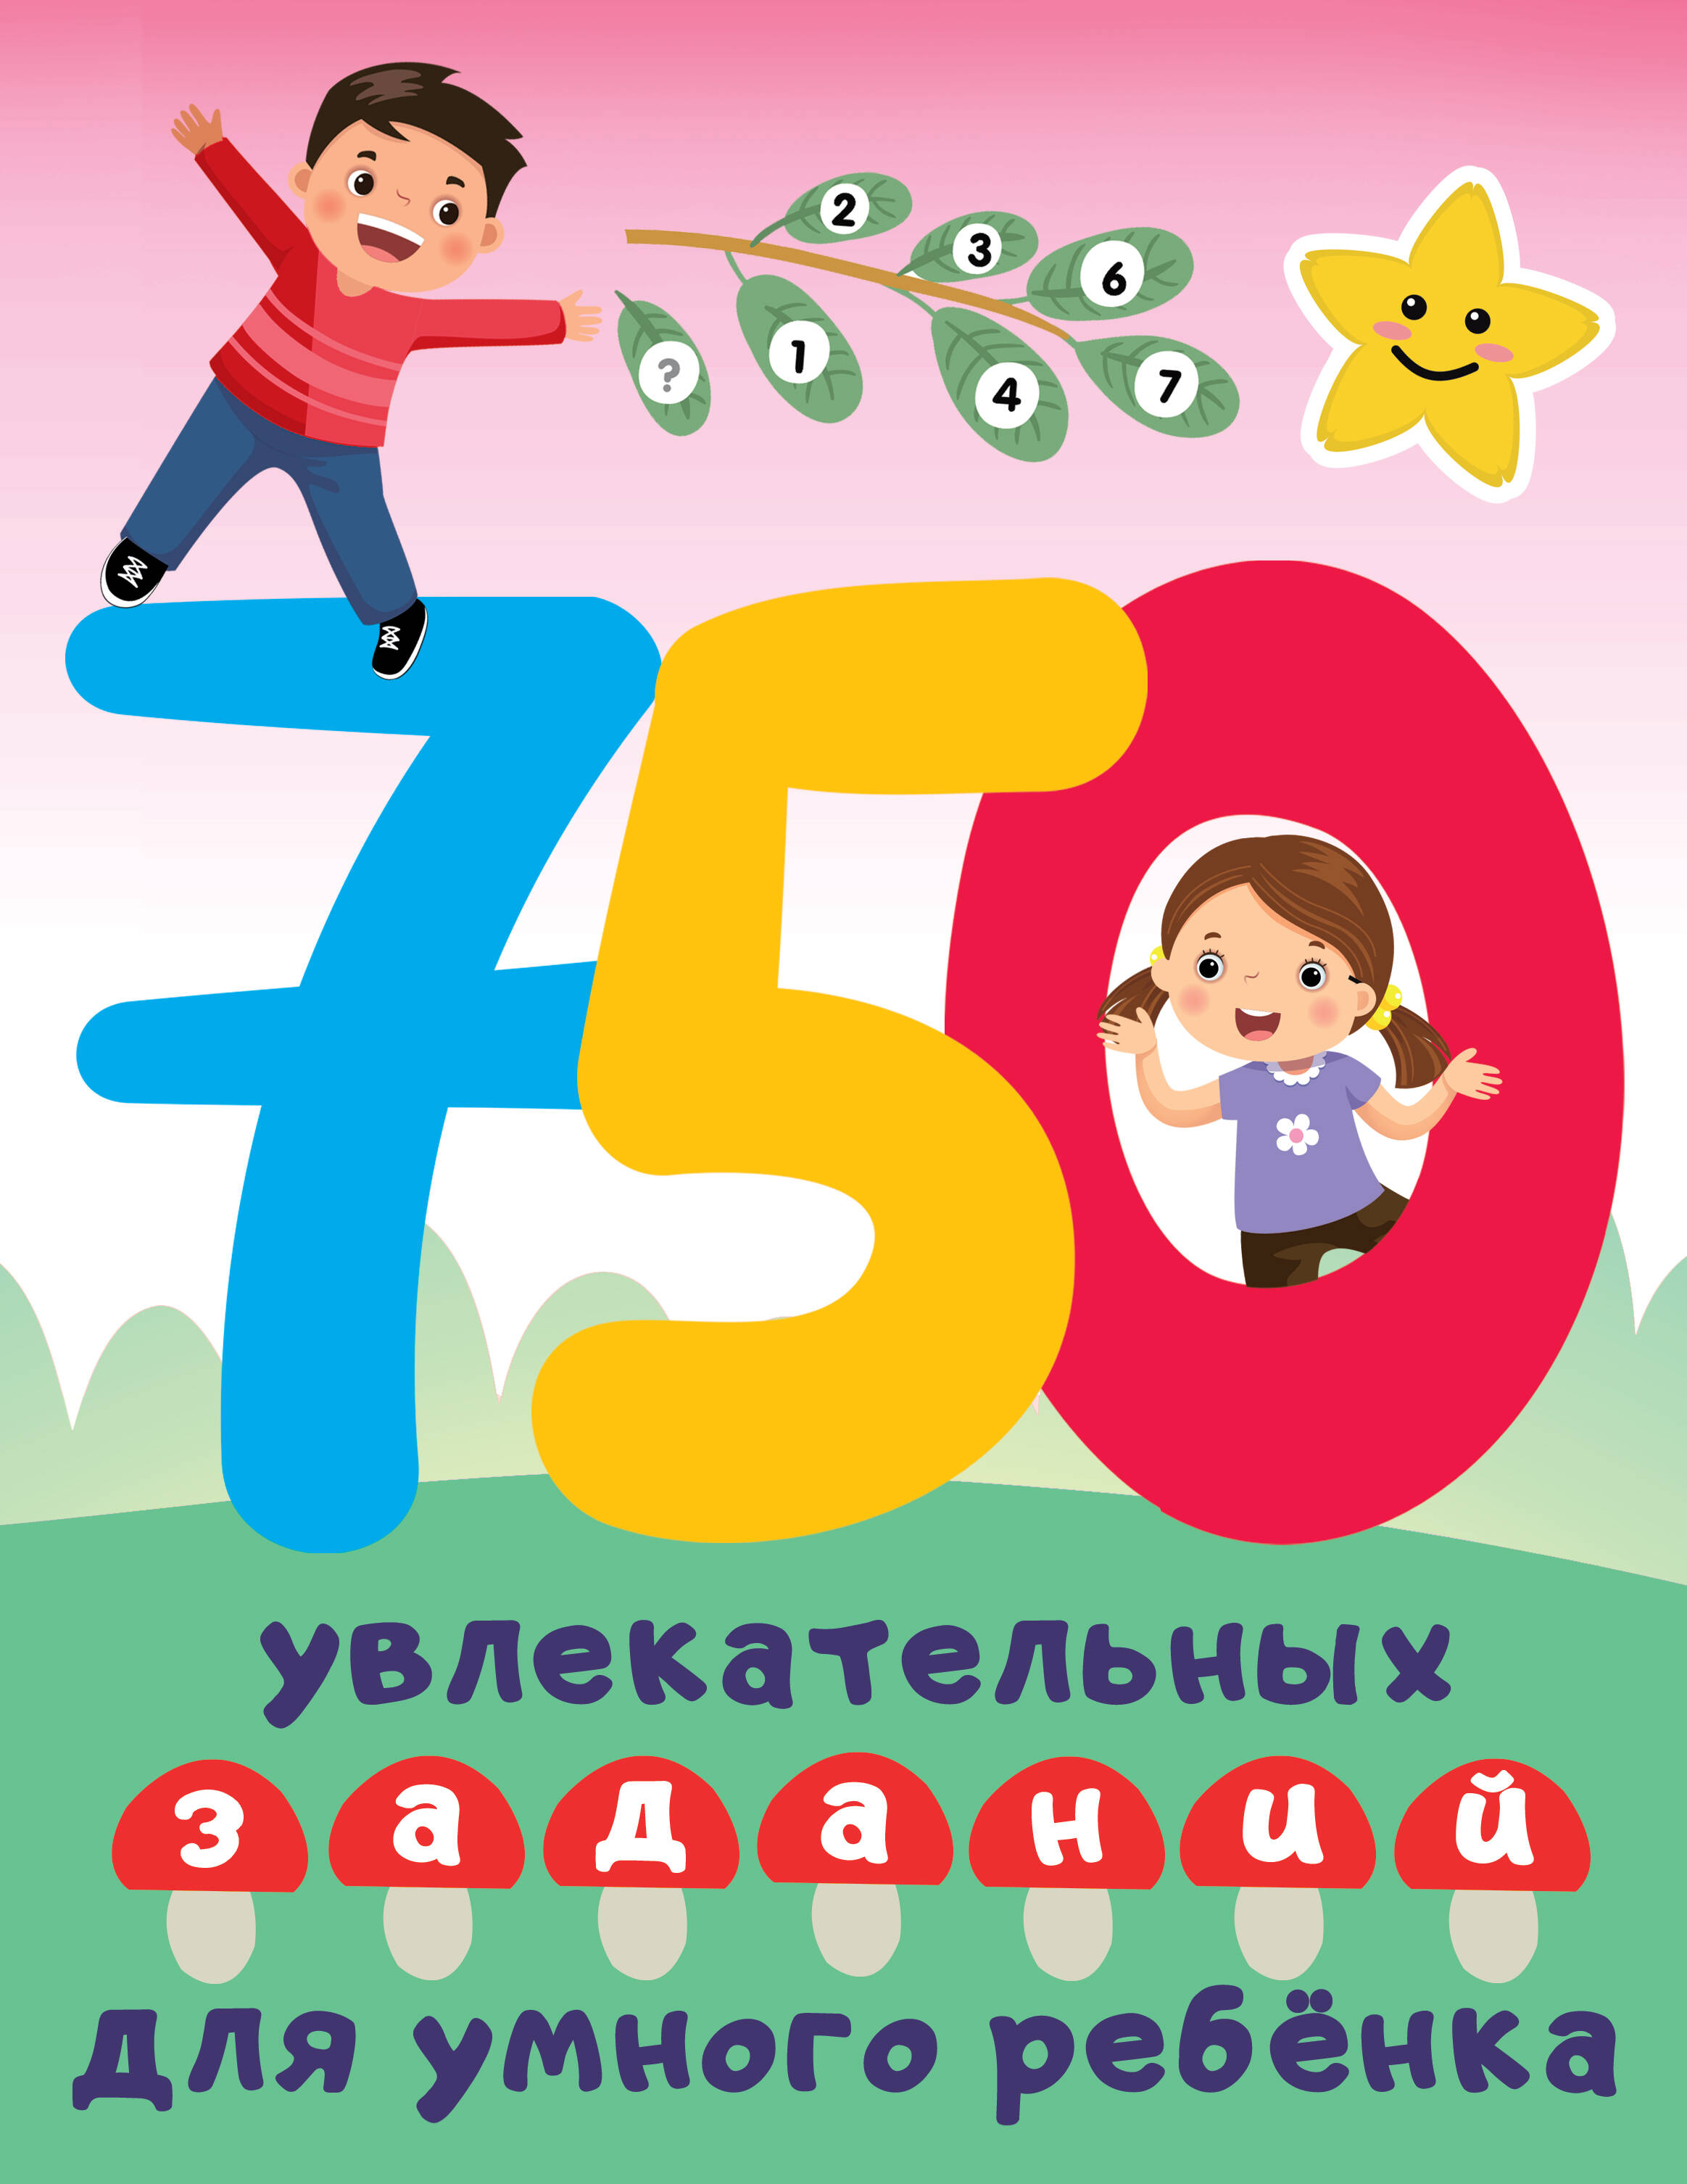 Дмитриева Валентина Геннадьевна 750 увлекательных заданий для умного ребенка